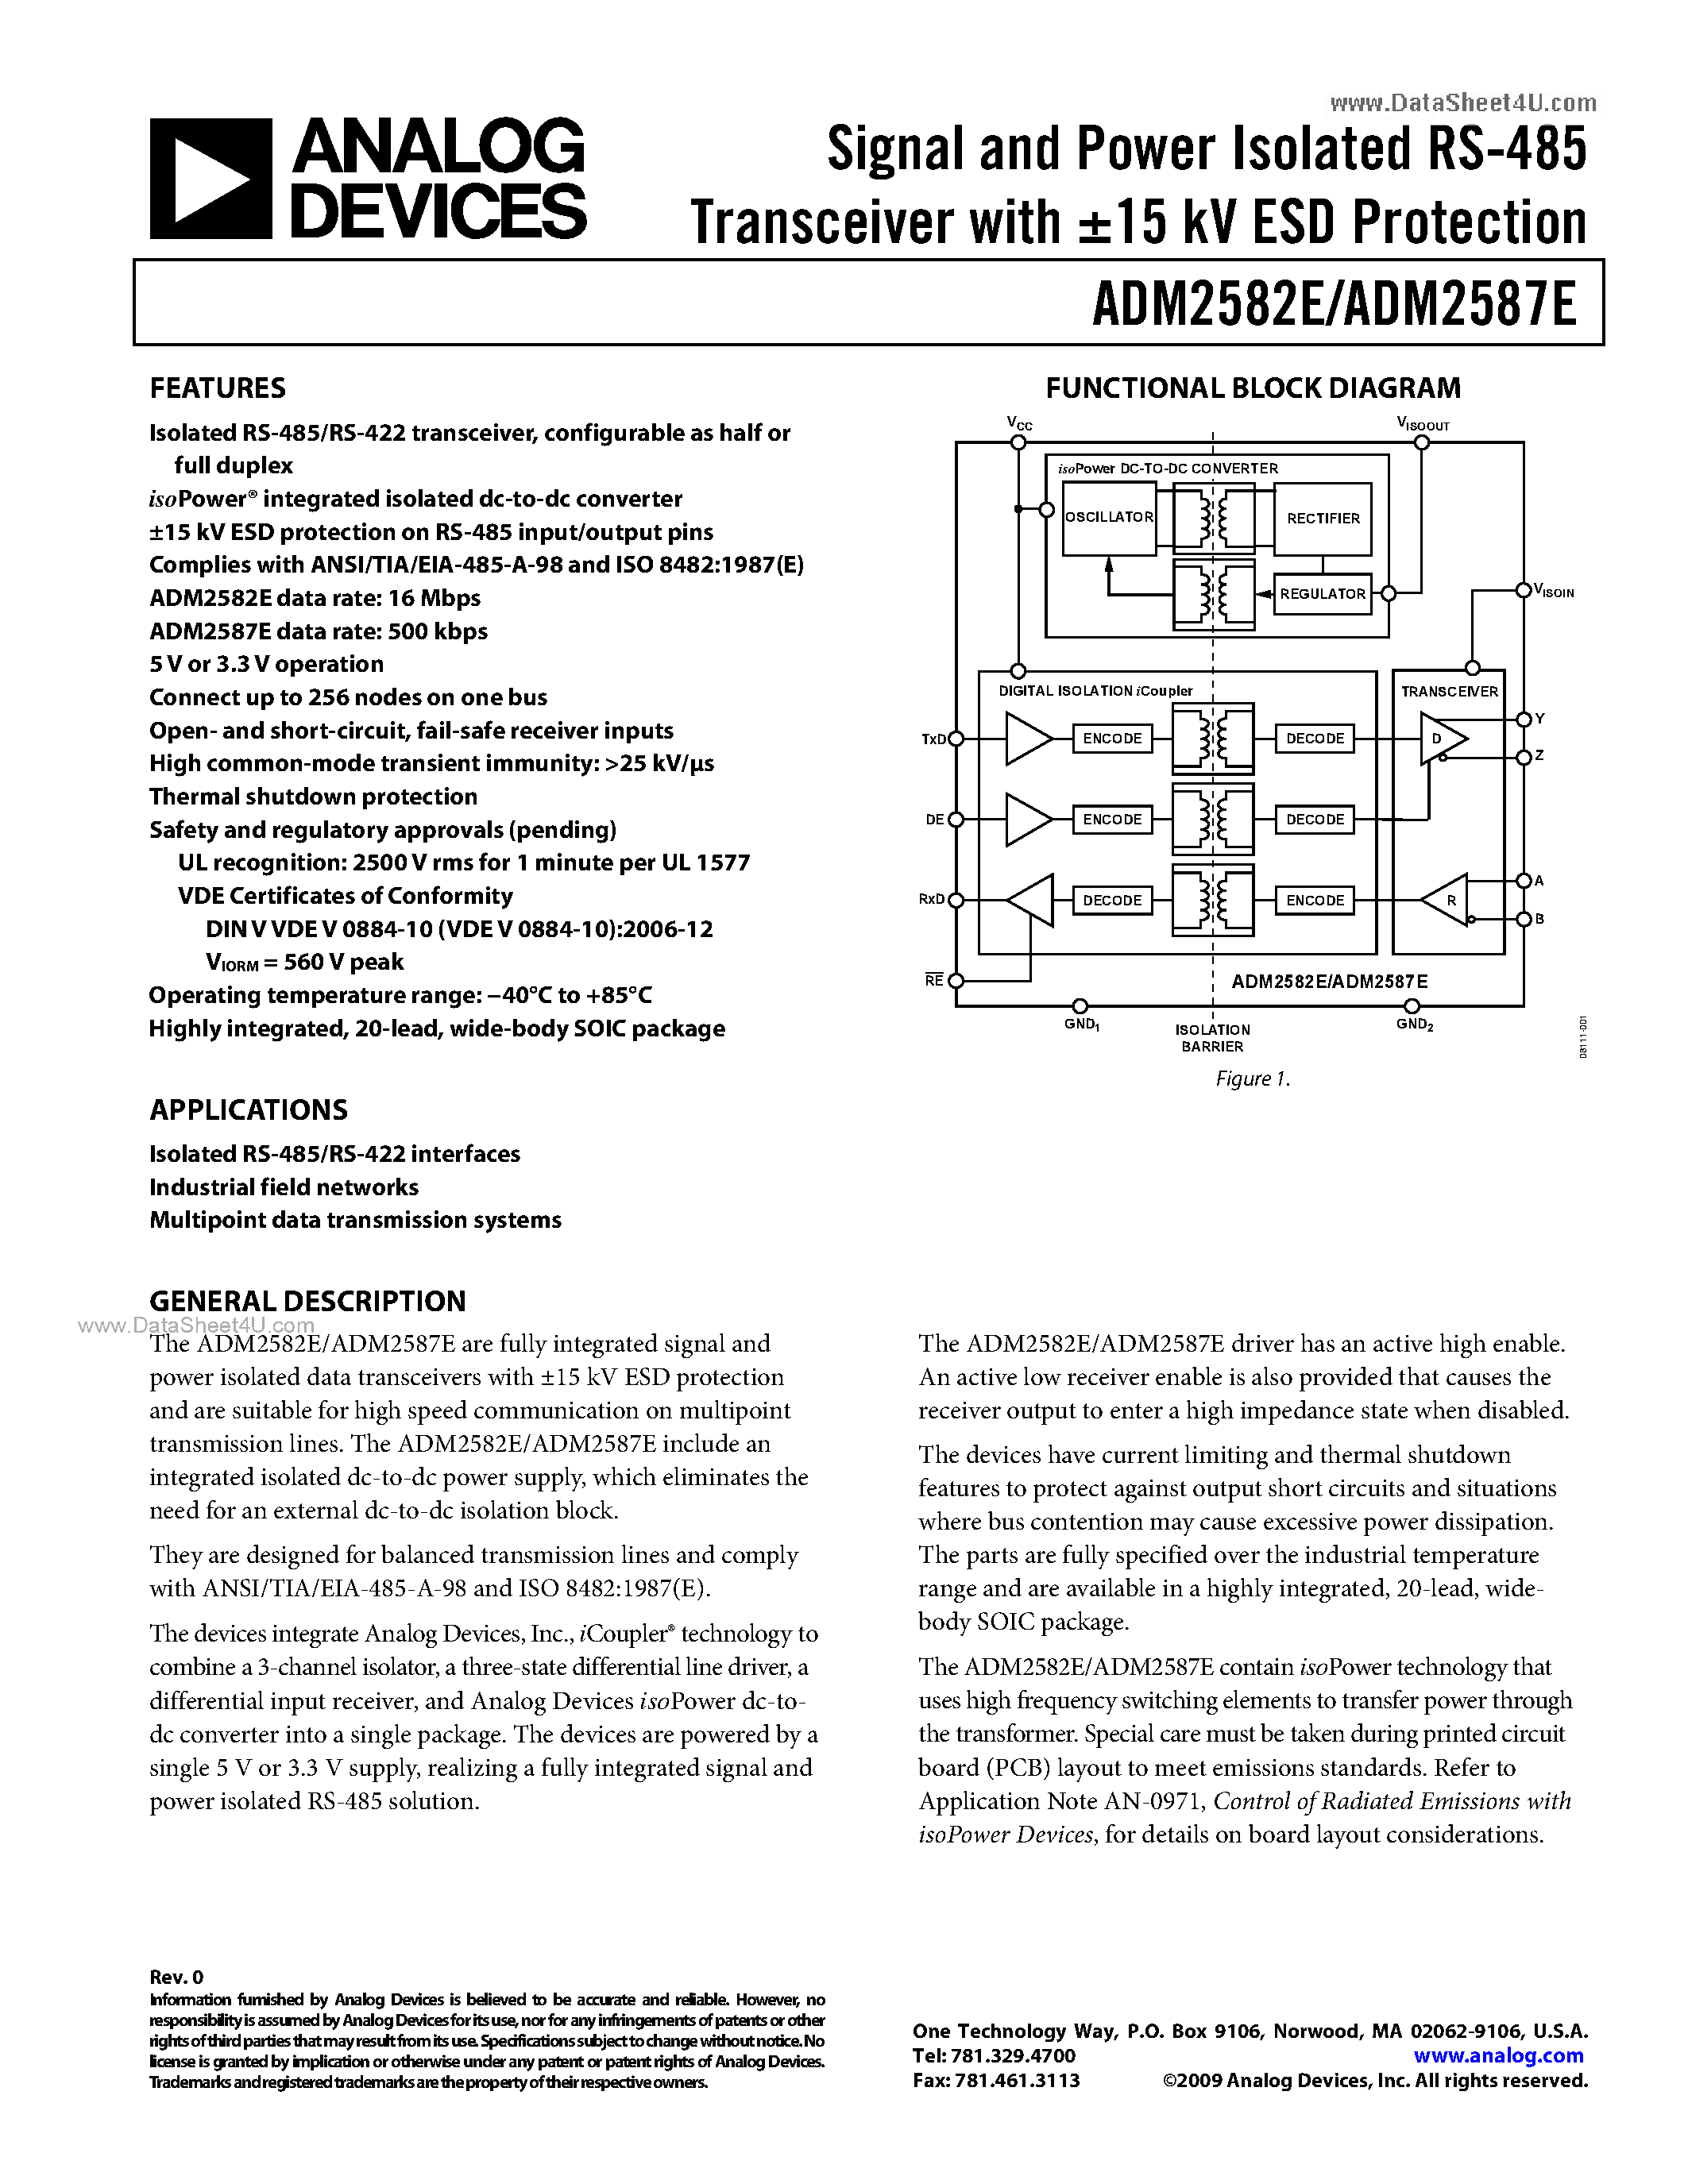 Datasheet ADM2582E - (ADM2582E / ADM2587E) Signal and Power Isolated RS-485 Transceiver page 1